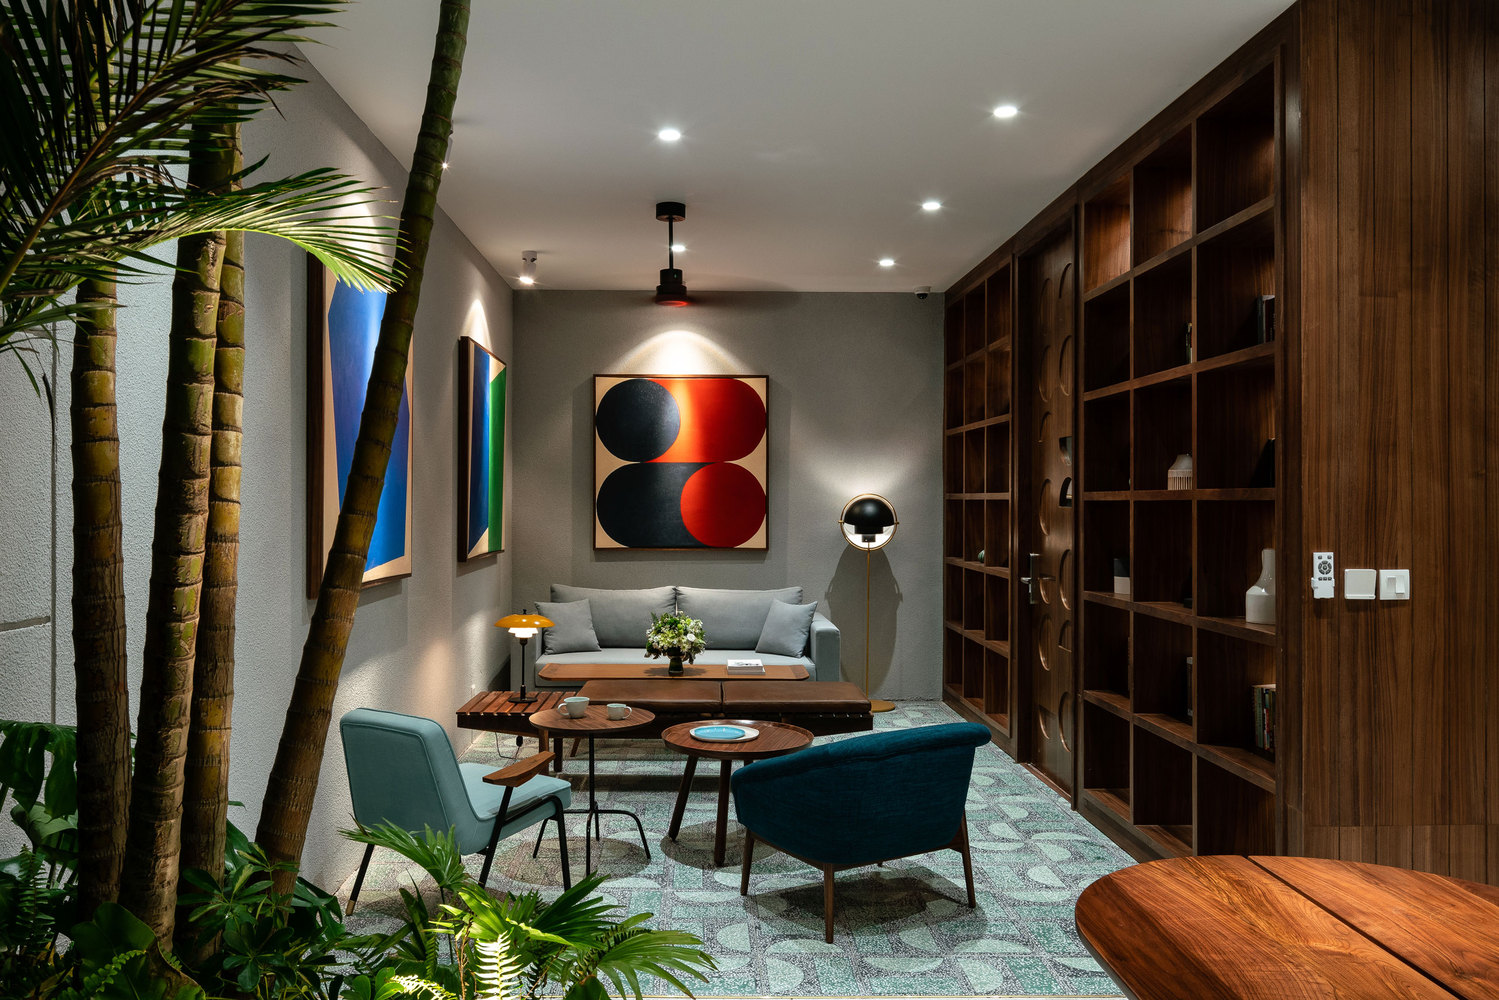 Hình ảnh phòng khách căn hộ dịch vụ với hệ tủ gỗ lớn, tranh treo tường nghệ thuật, cây xanh trang trí